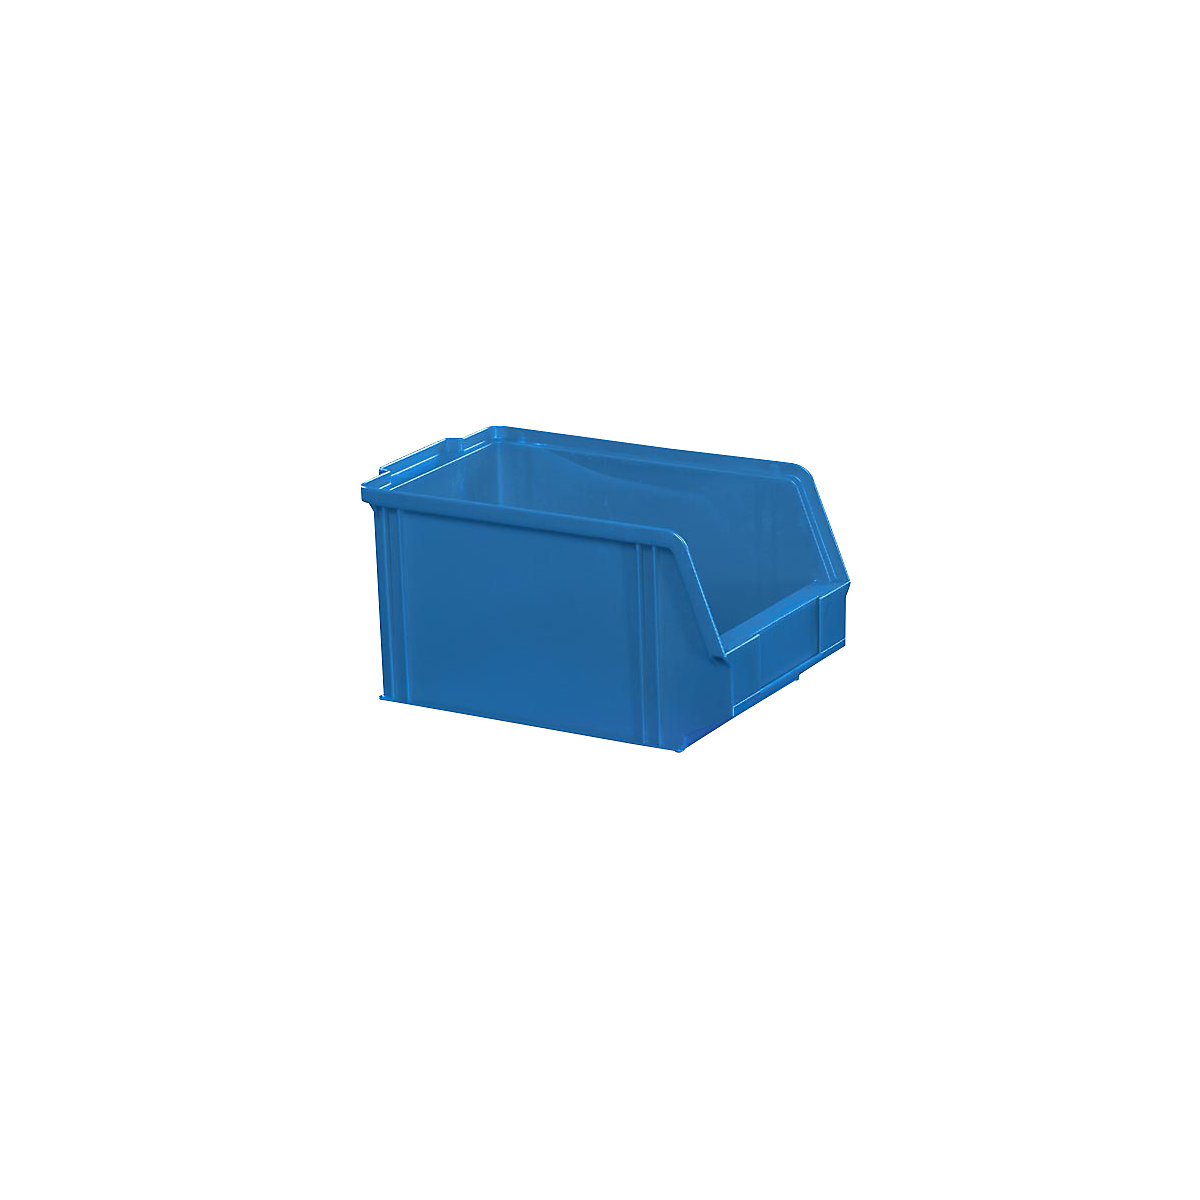 Sichtlagerkasten aus Polystyrol, Länge 230 mm, BxH 146 x 130 mm, VE 60 Stk, blau-9